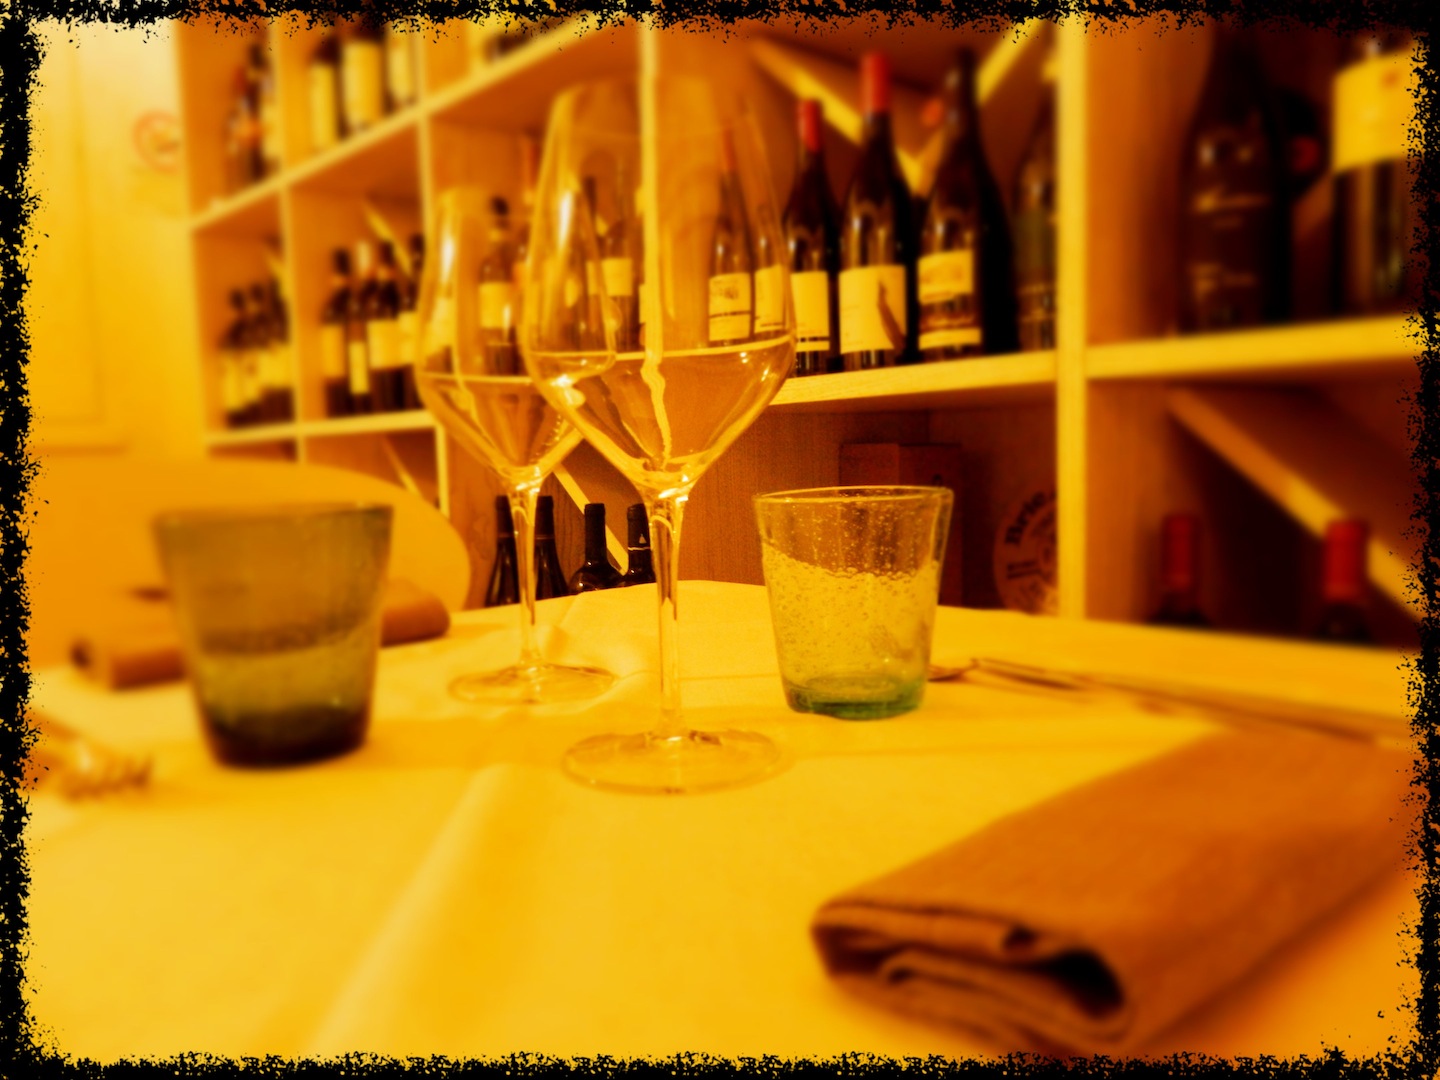 L' Enoteca 7 Rosso a Fiesole è un locale confortevole, dove una buona cucina toscana rivisitata si accompagna ad un'ampia scelta di vini e birre artigianali